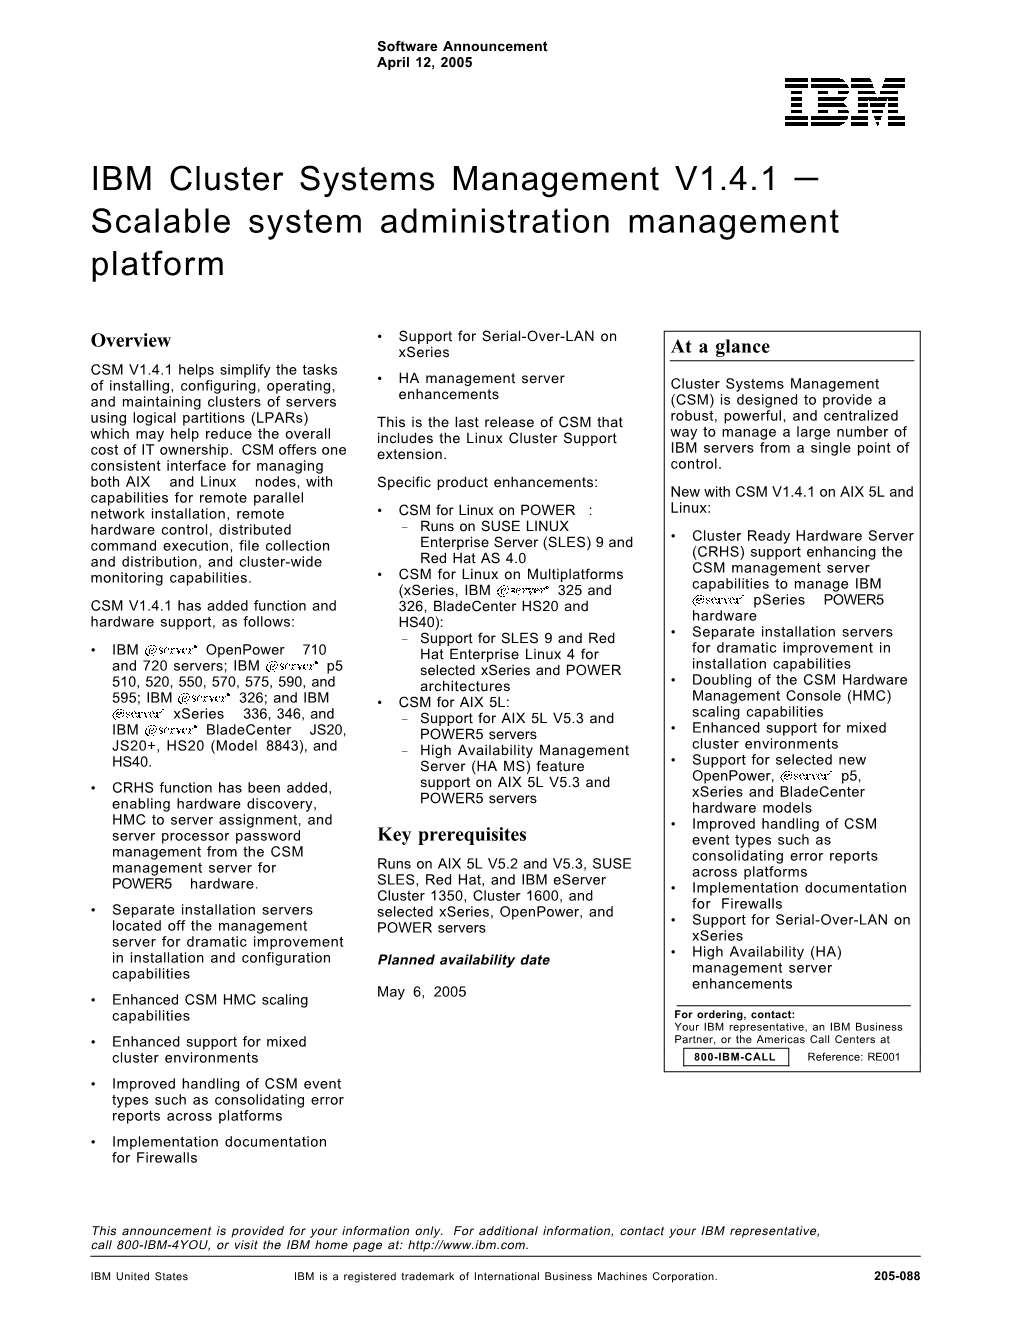 IBM Cluster Systems Management V1.4.1 — Scalable System Administration Management Platform